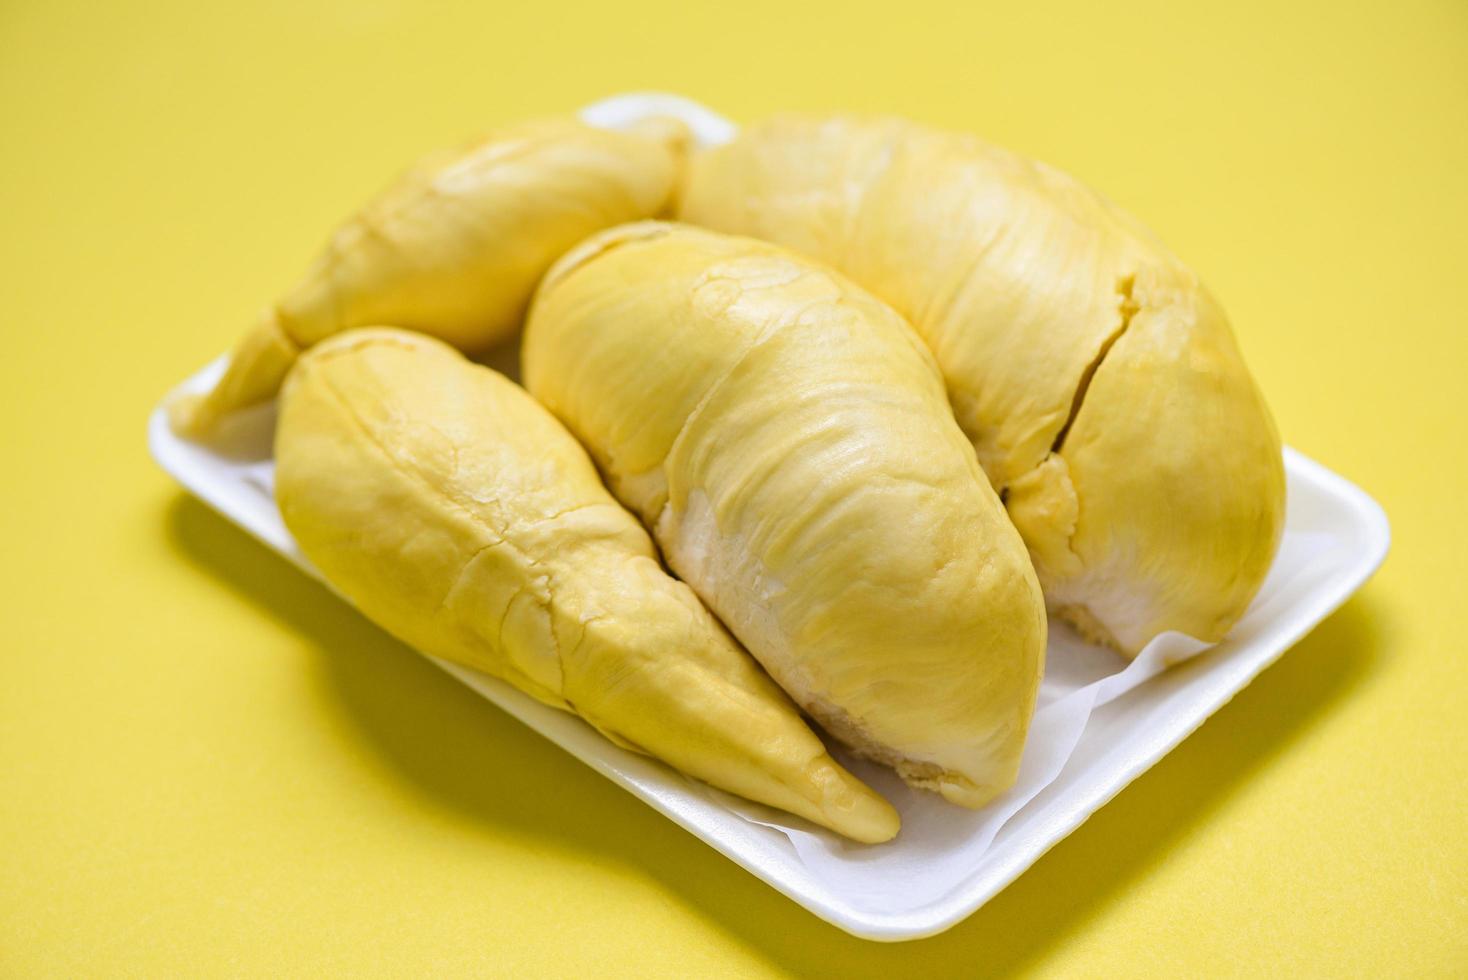 fruta durian fresca de cáscara de árbol en bandeja de plástico y fondo amarillo - verano de fruta tropical durian madura para postre dulce o merienda en tailandia foto